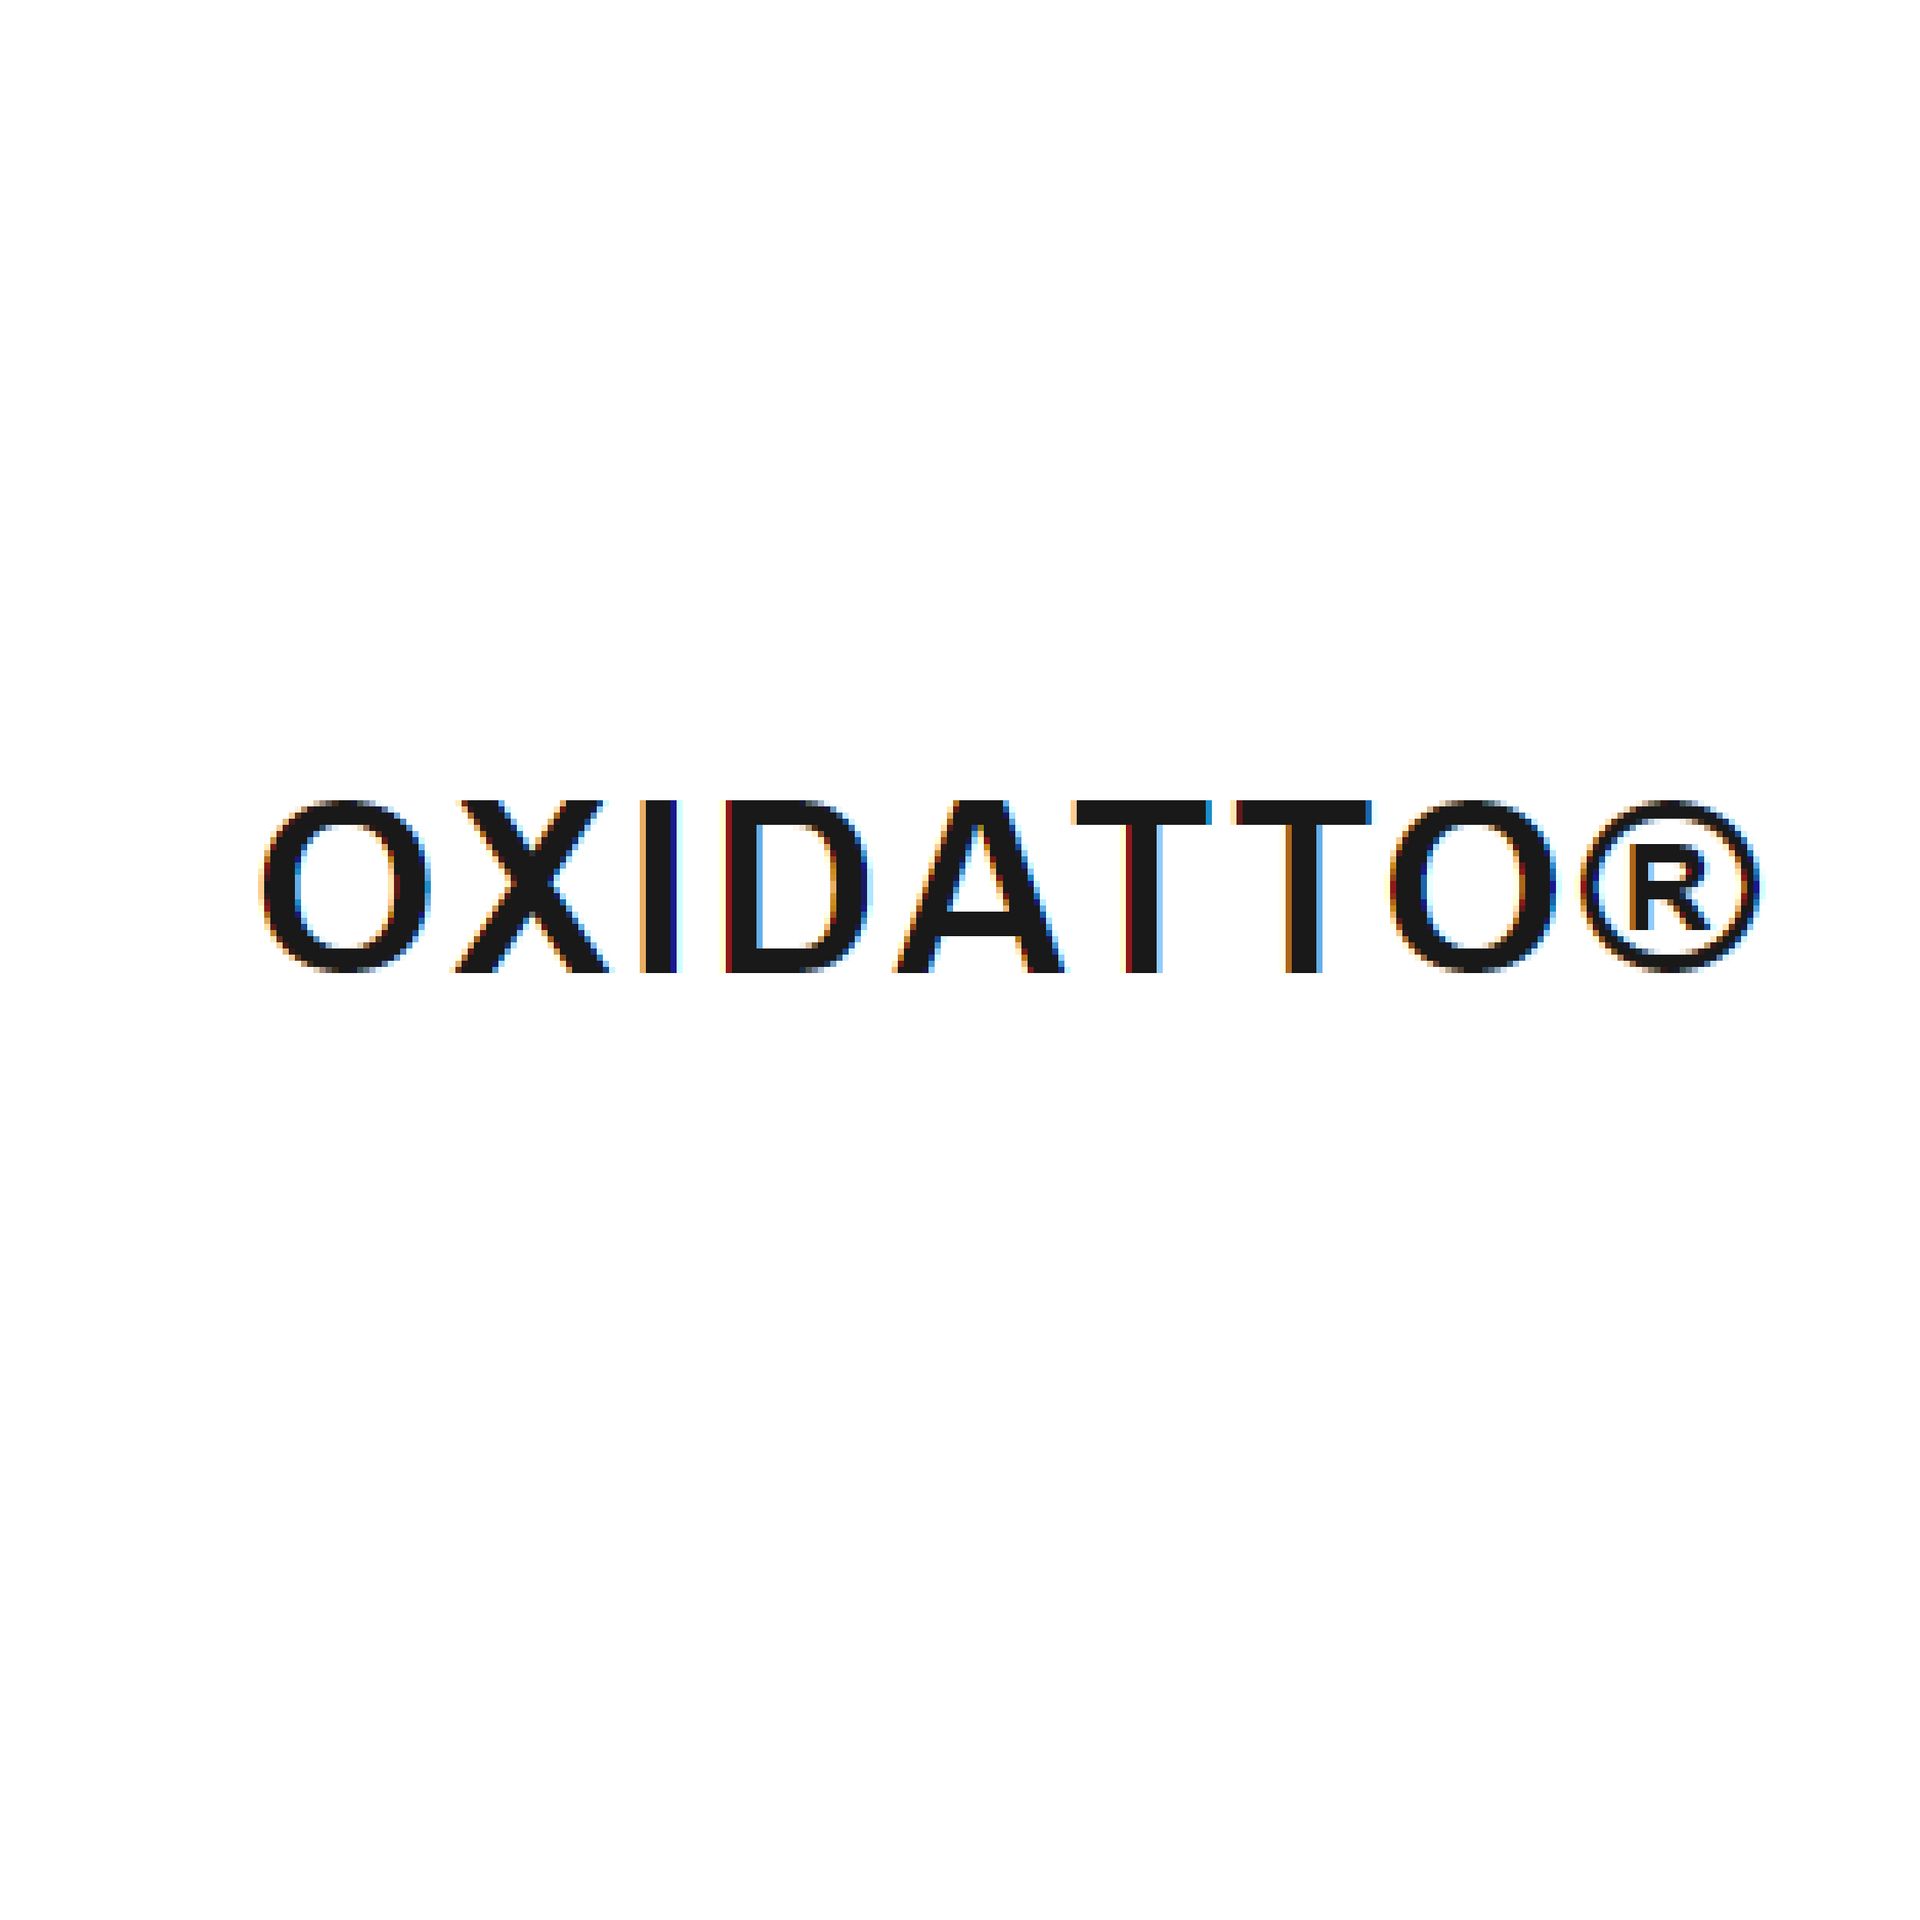 Oxidatto